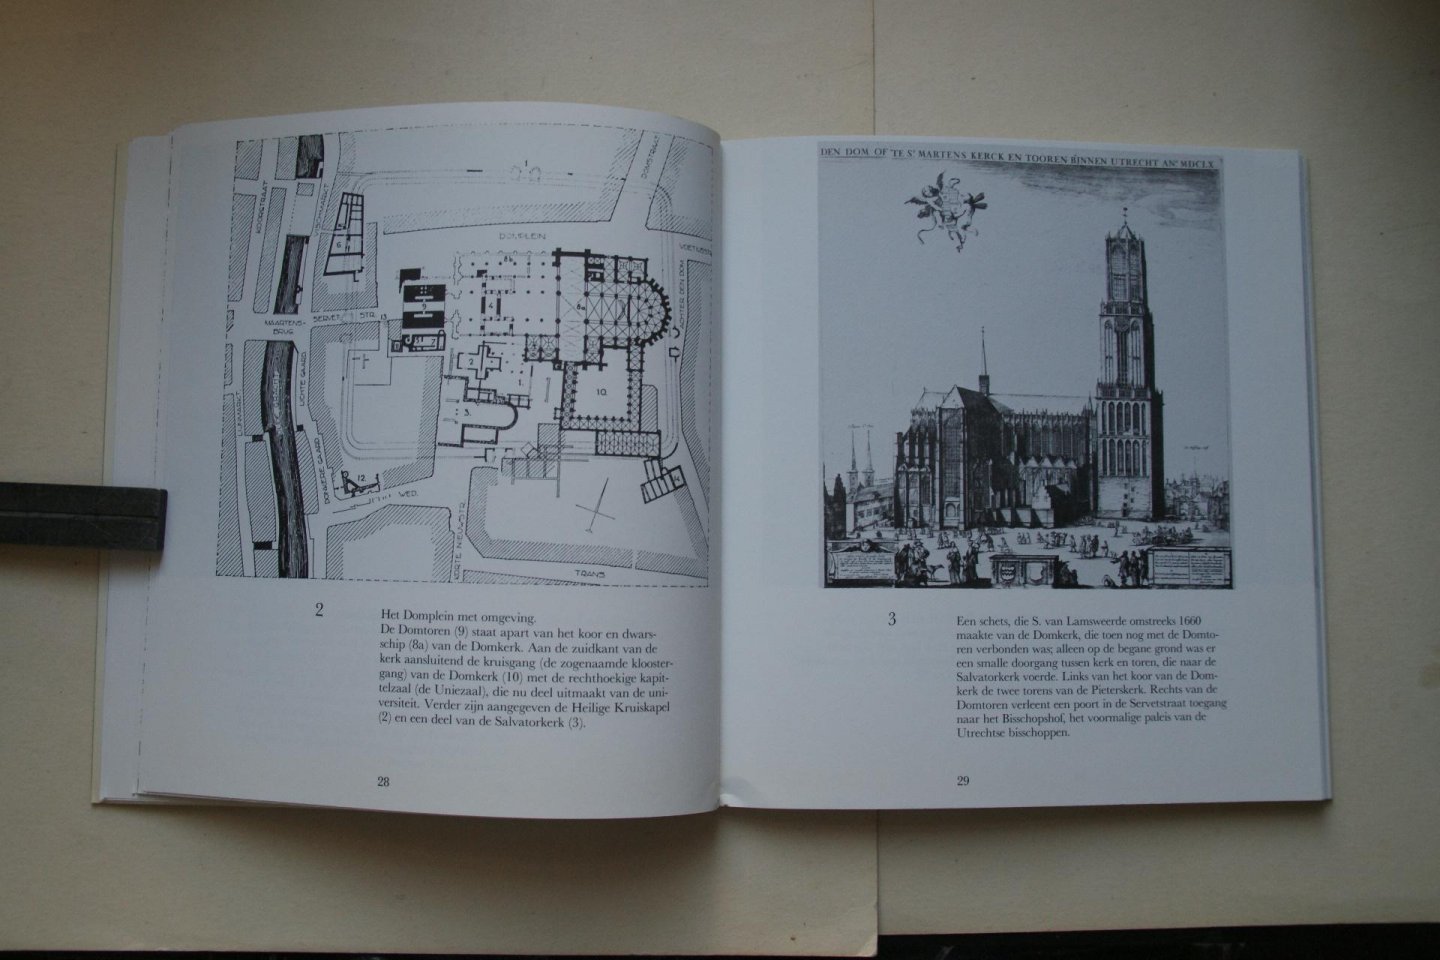 Meyere, Jos de;  Hulzen Dr. A. van - 2 boeken samen: het Agnietenklooster   &    Twee Wandelingen Door de Middeleeuwse Kerkenstad  Utrecht